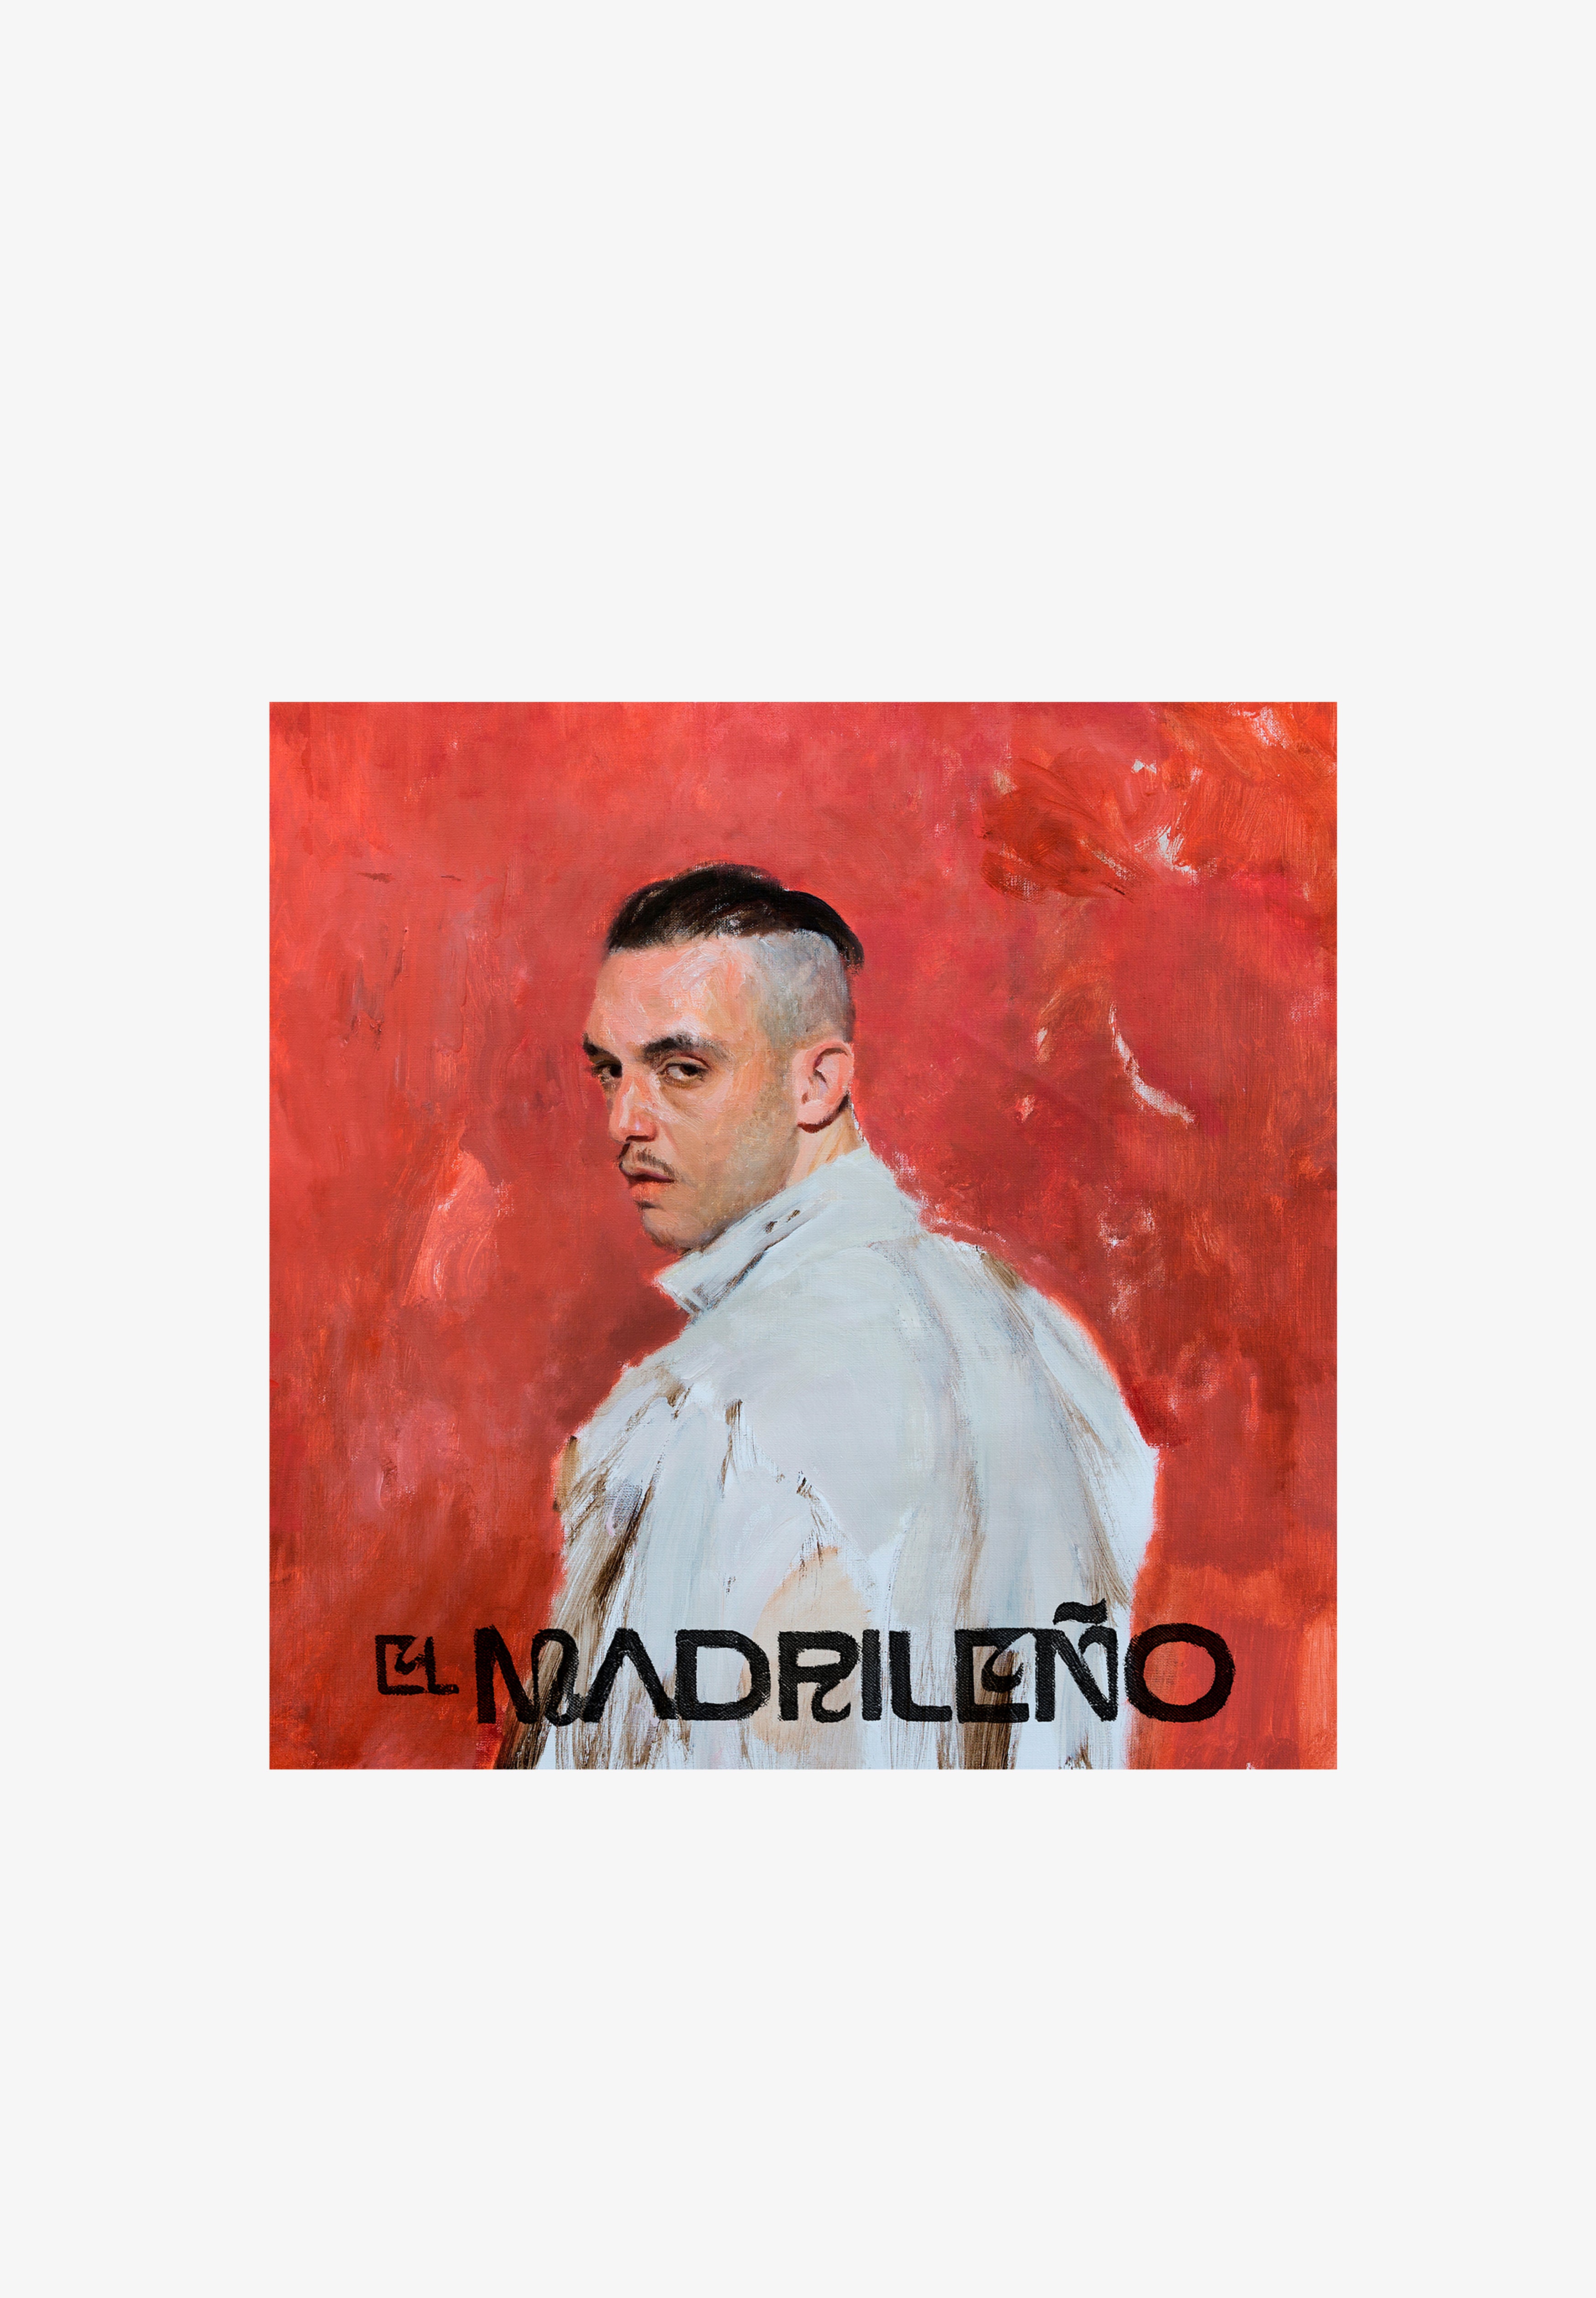 EL MADRILEÑO (Vinyl): : Música